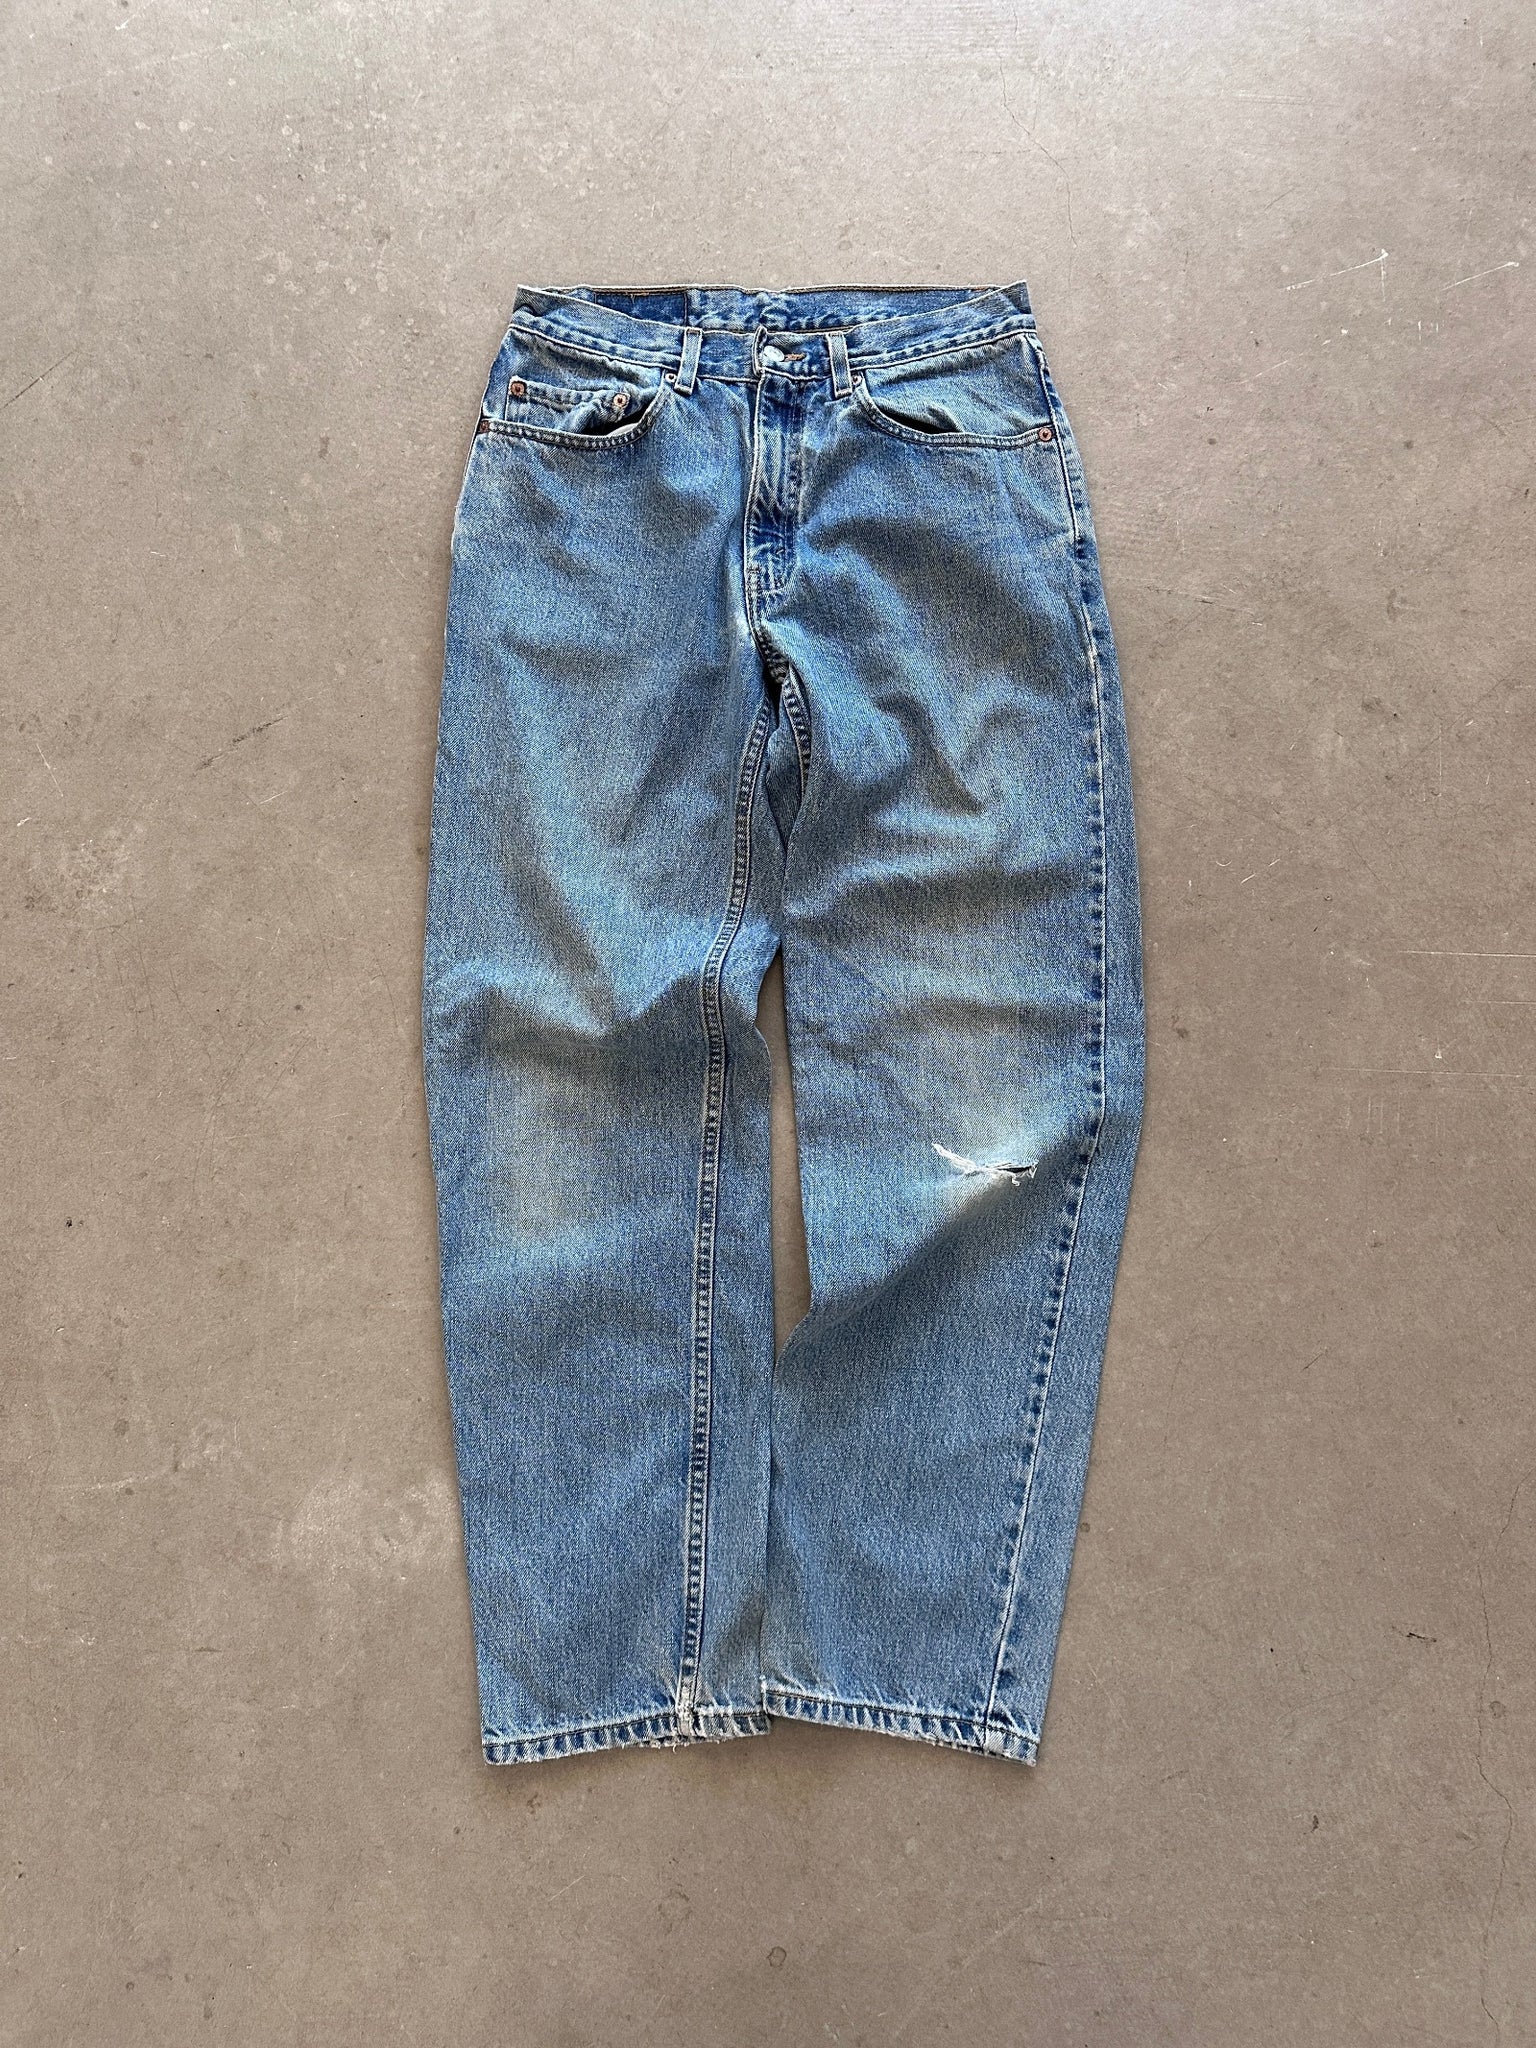 2002 Levi's 550 Jeans - 32 x 32